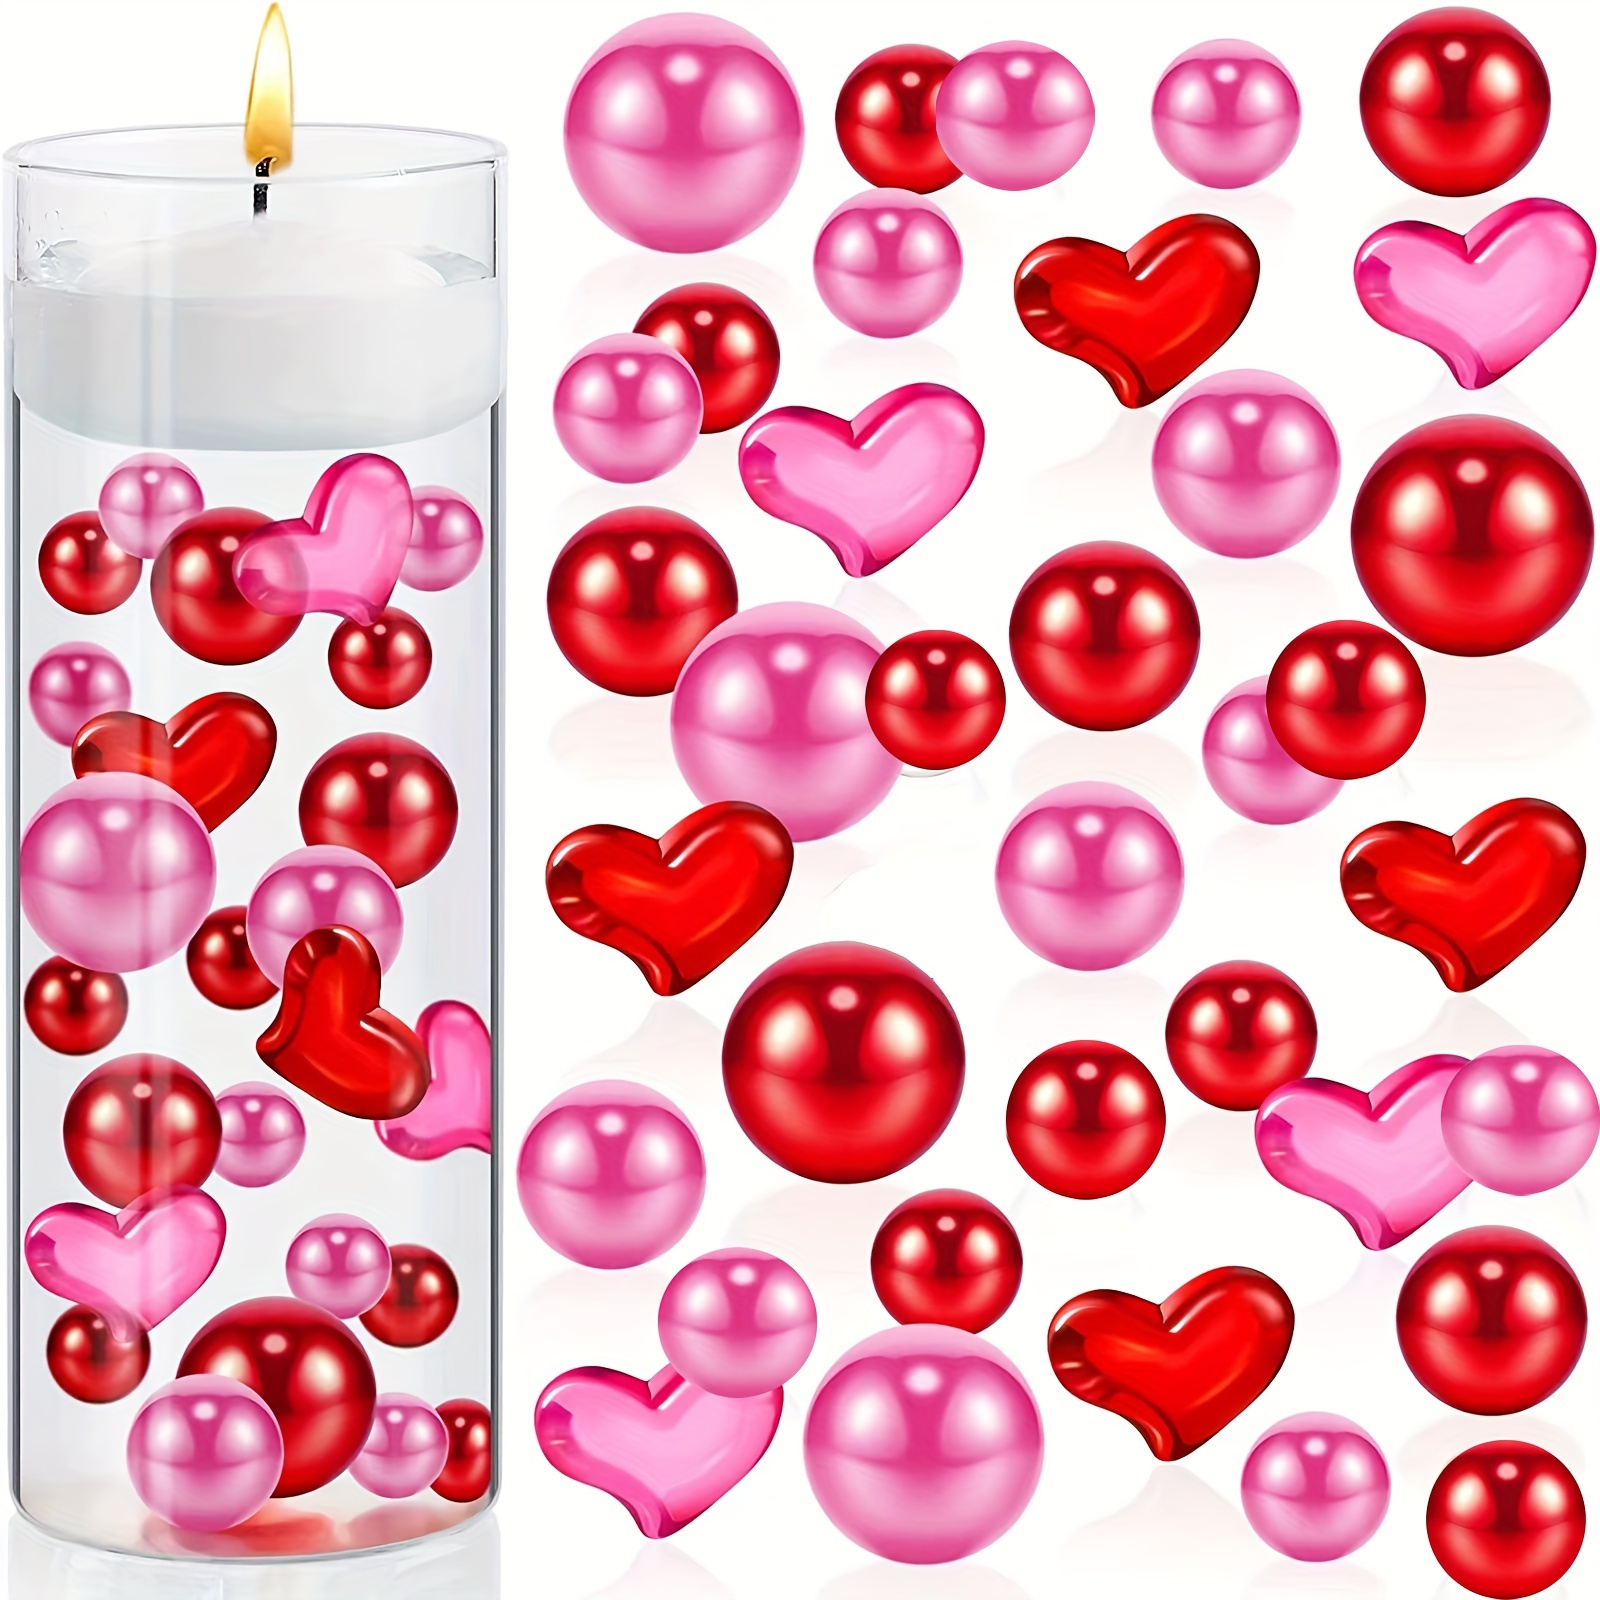 Vase filler Valentine's day themed